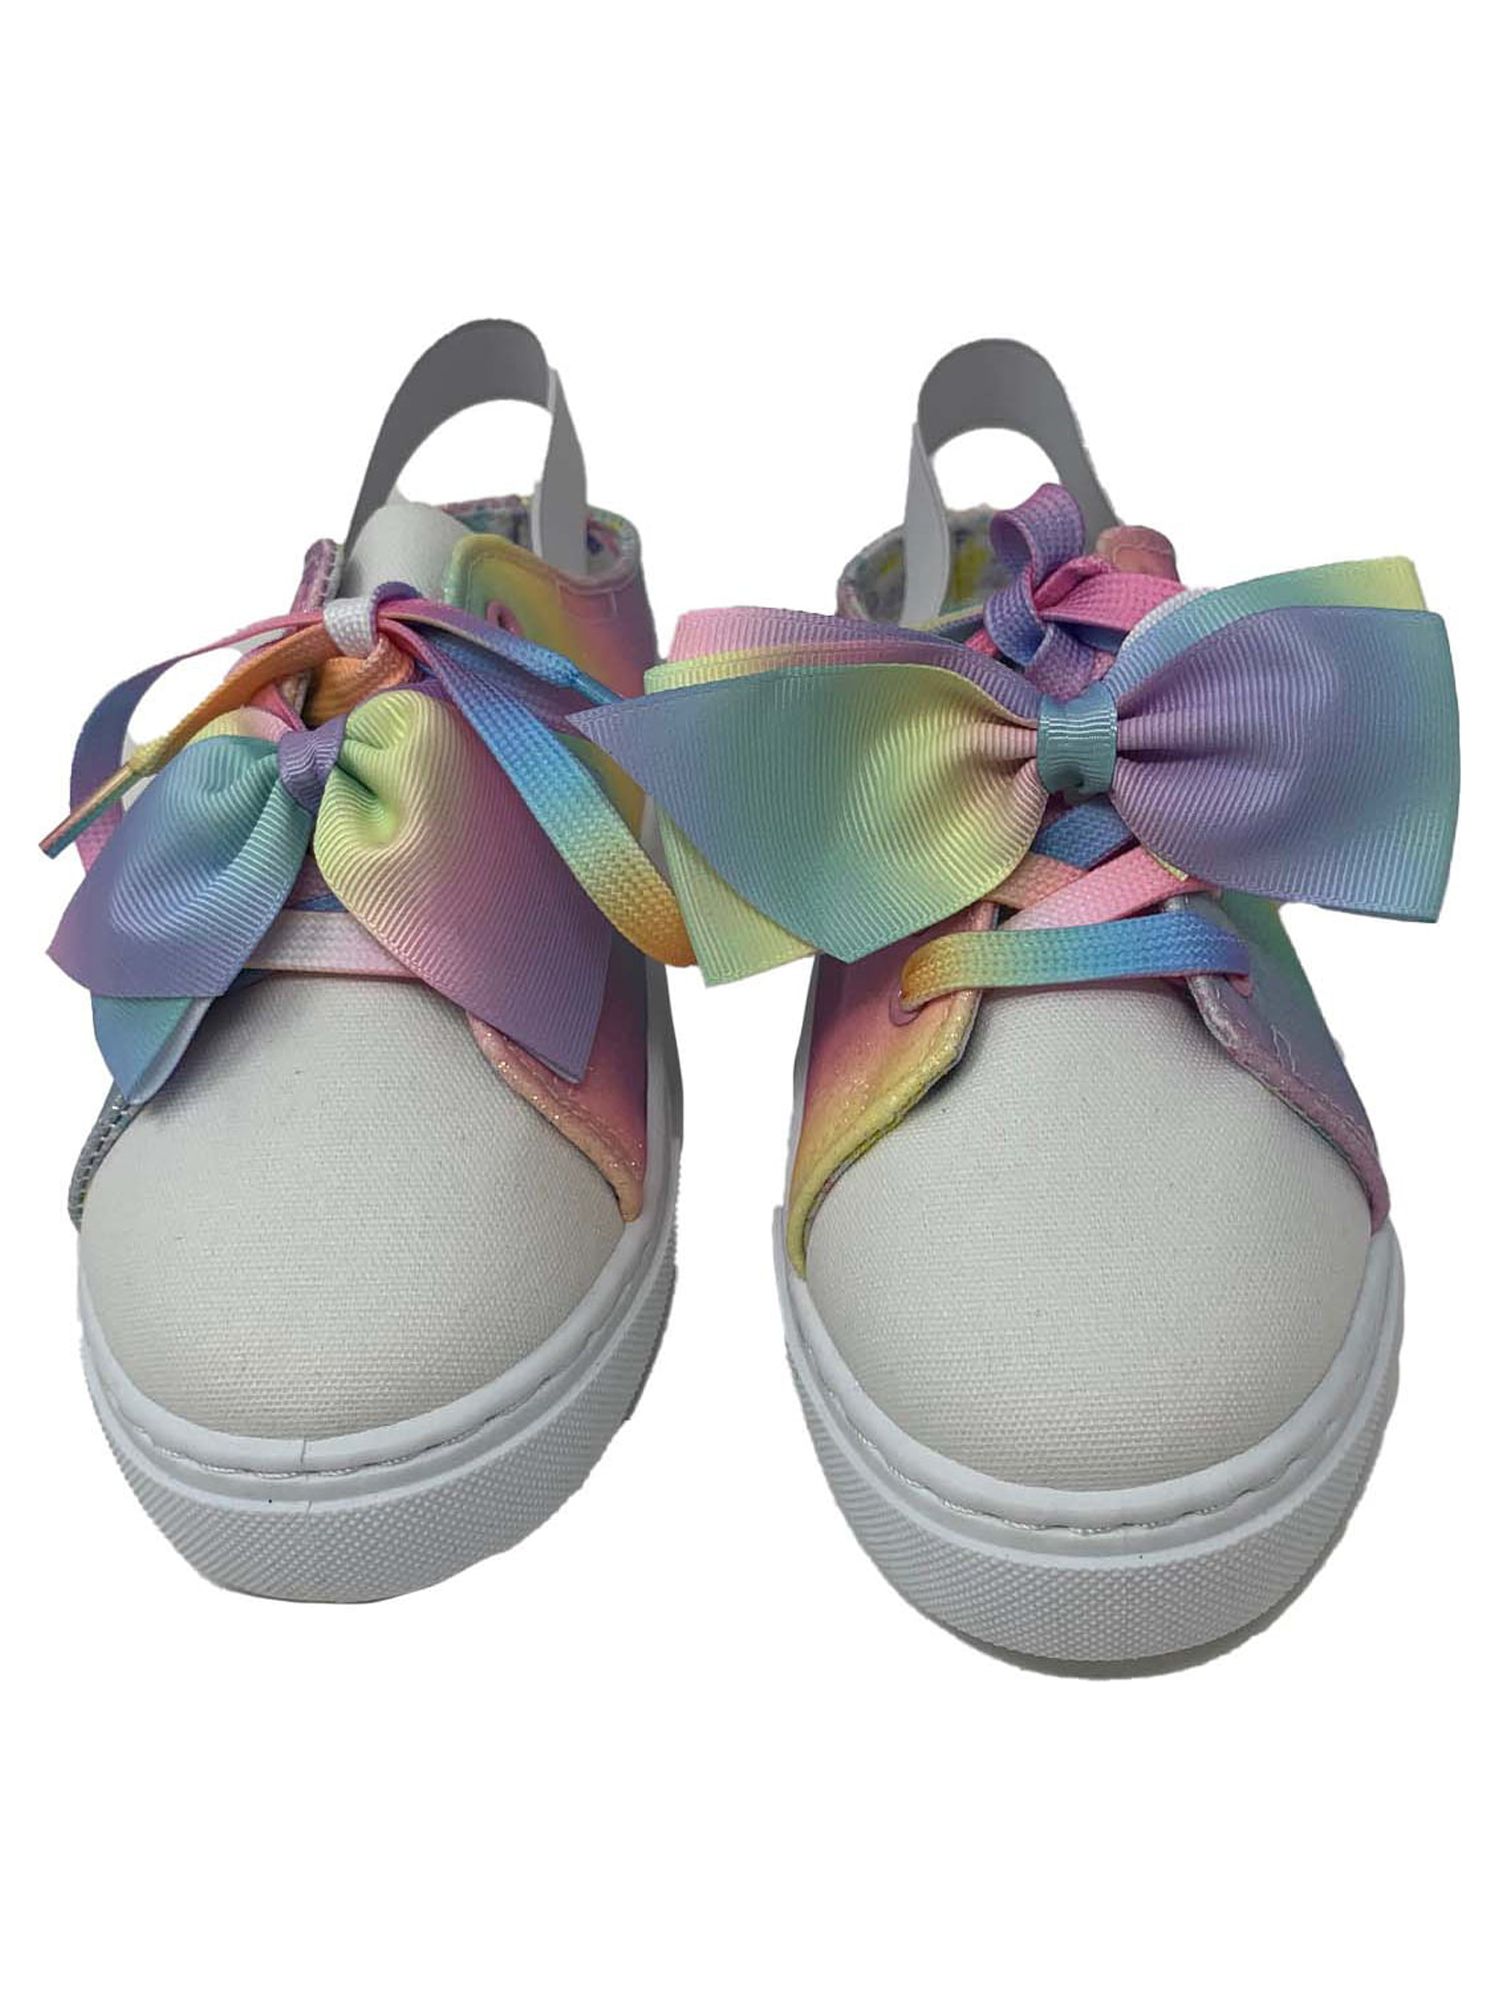 Toddler Jojo Siwa Glitter Sling Back Low Top Sneaker (Toddler Girls) - image 3 of 6